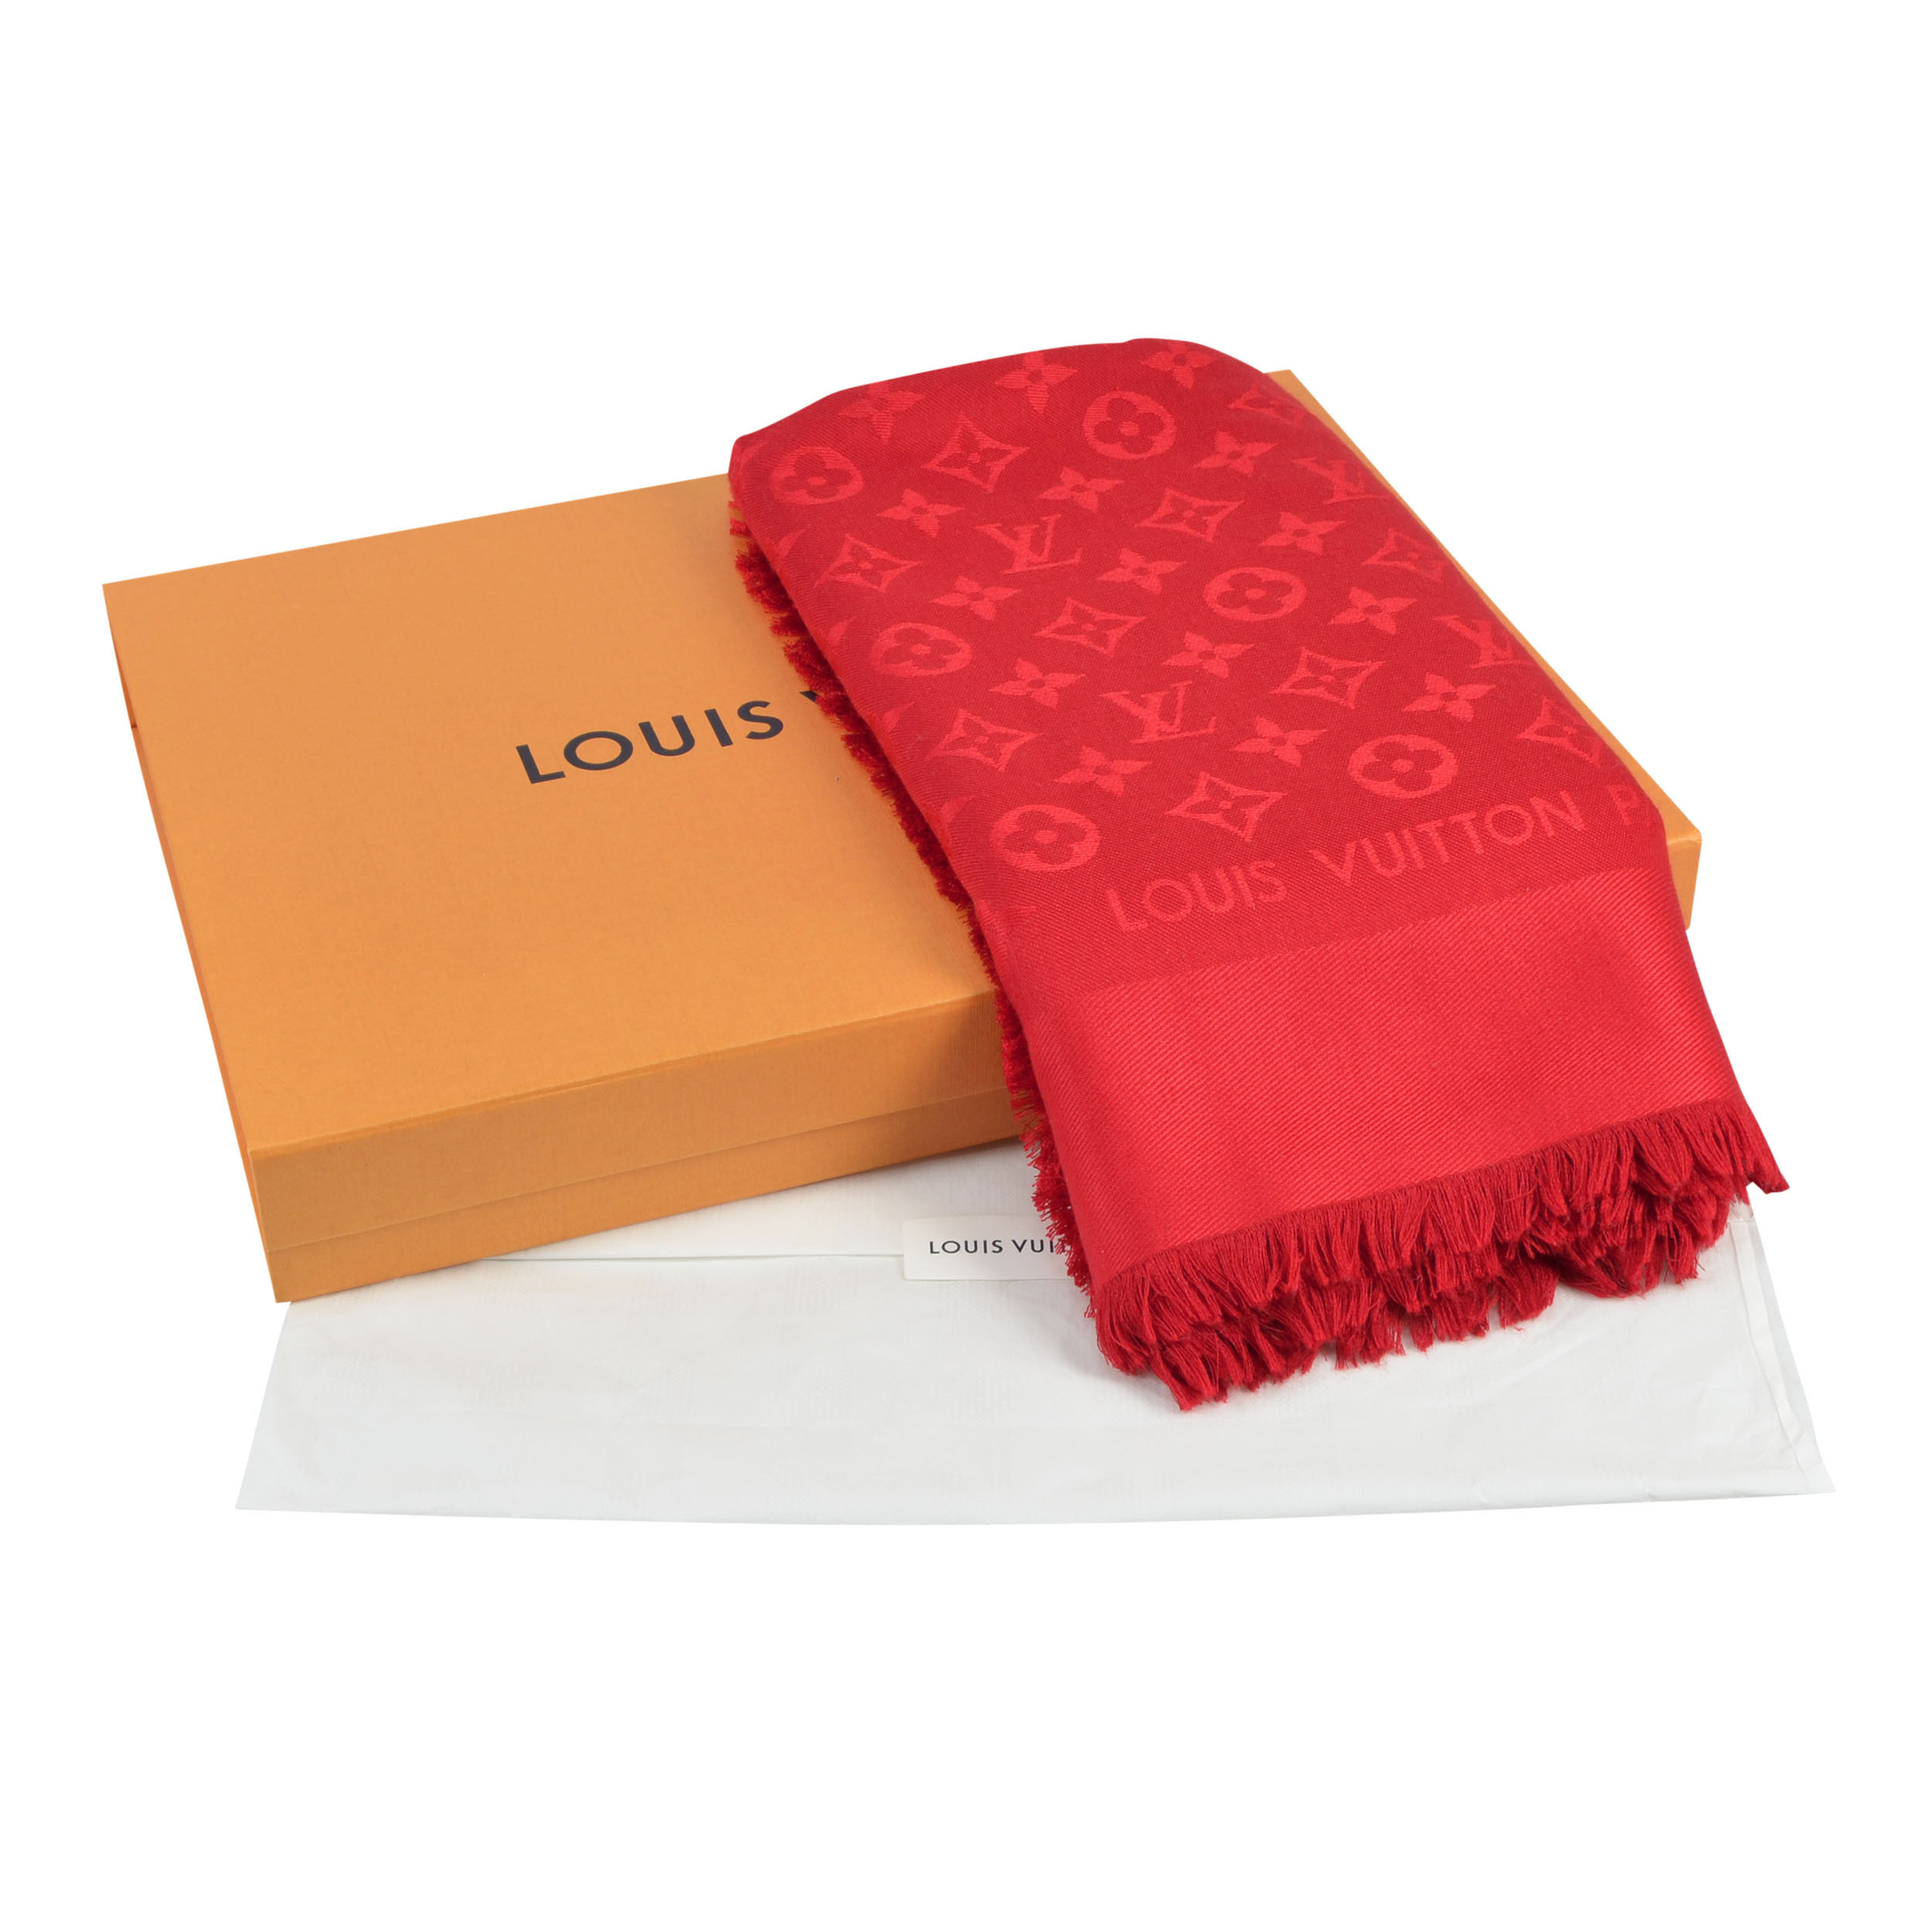 Louis Vuitton Monogram Tuch Geprüft & Original bei MyLovelyBoutique